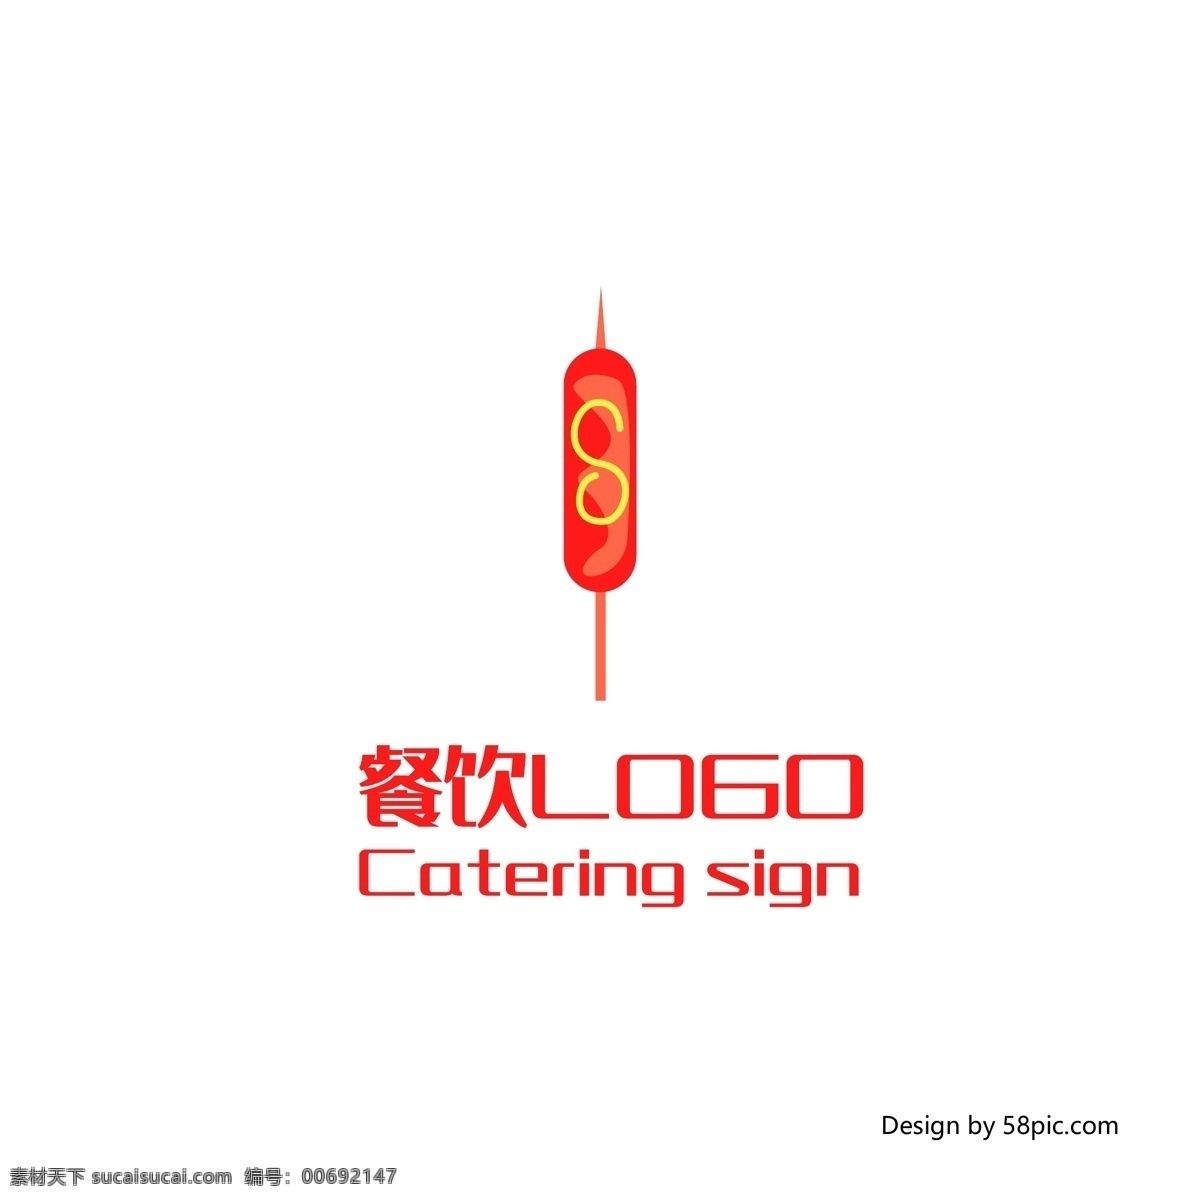 原创 创意 手绘 插画 香肠 烧烤 餐厅 餐饮 logo 可商用 标志